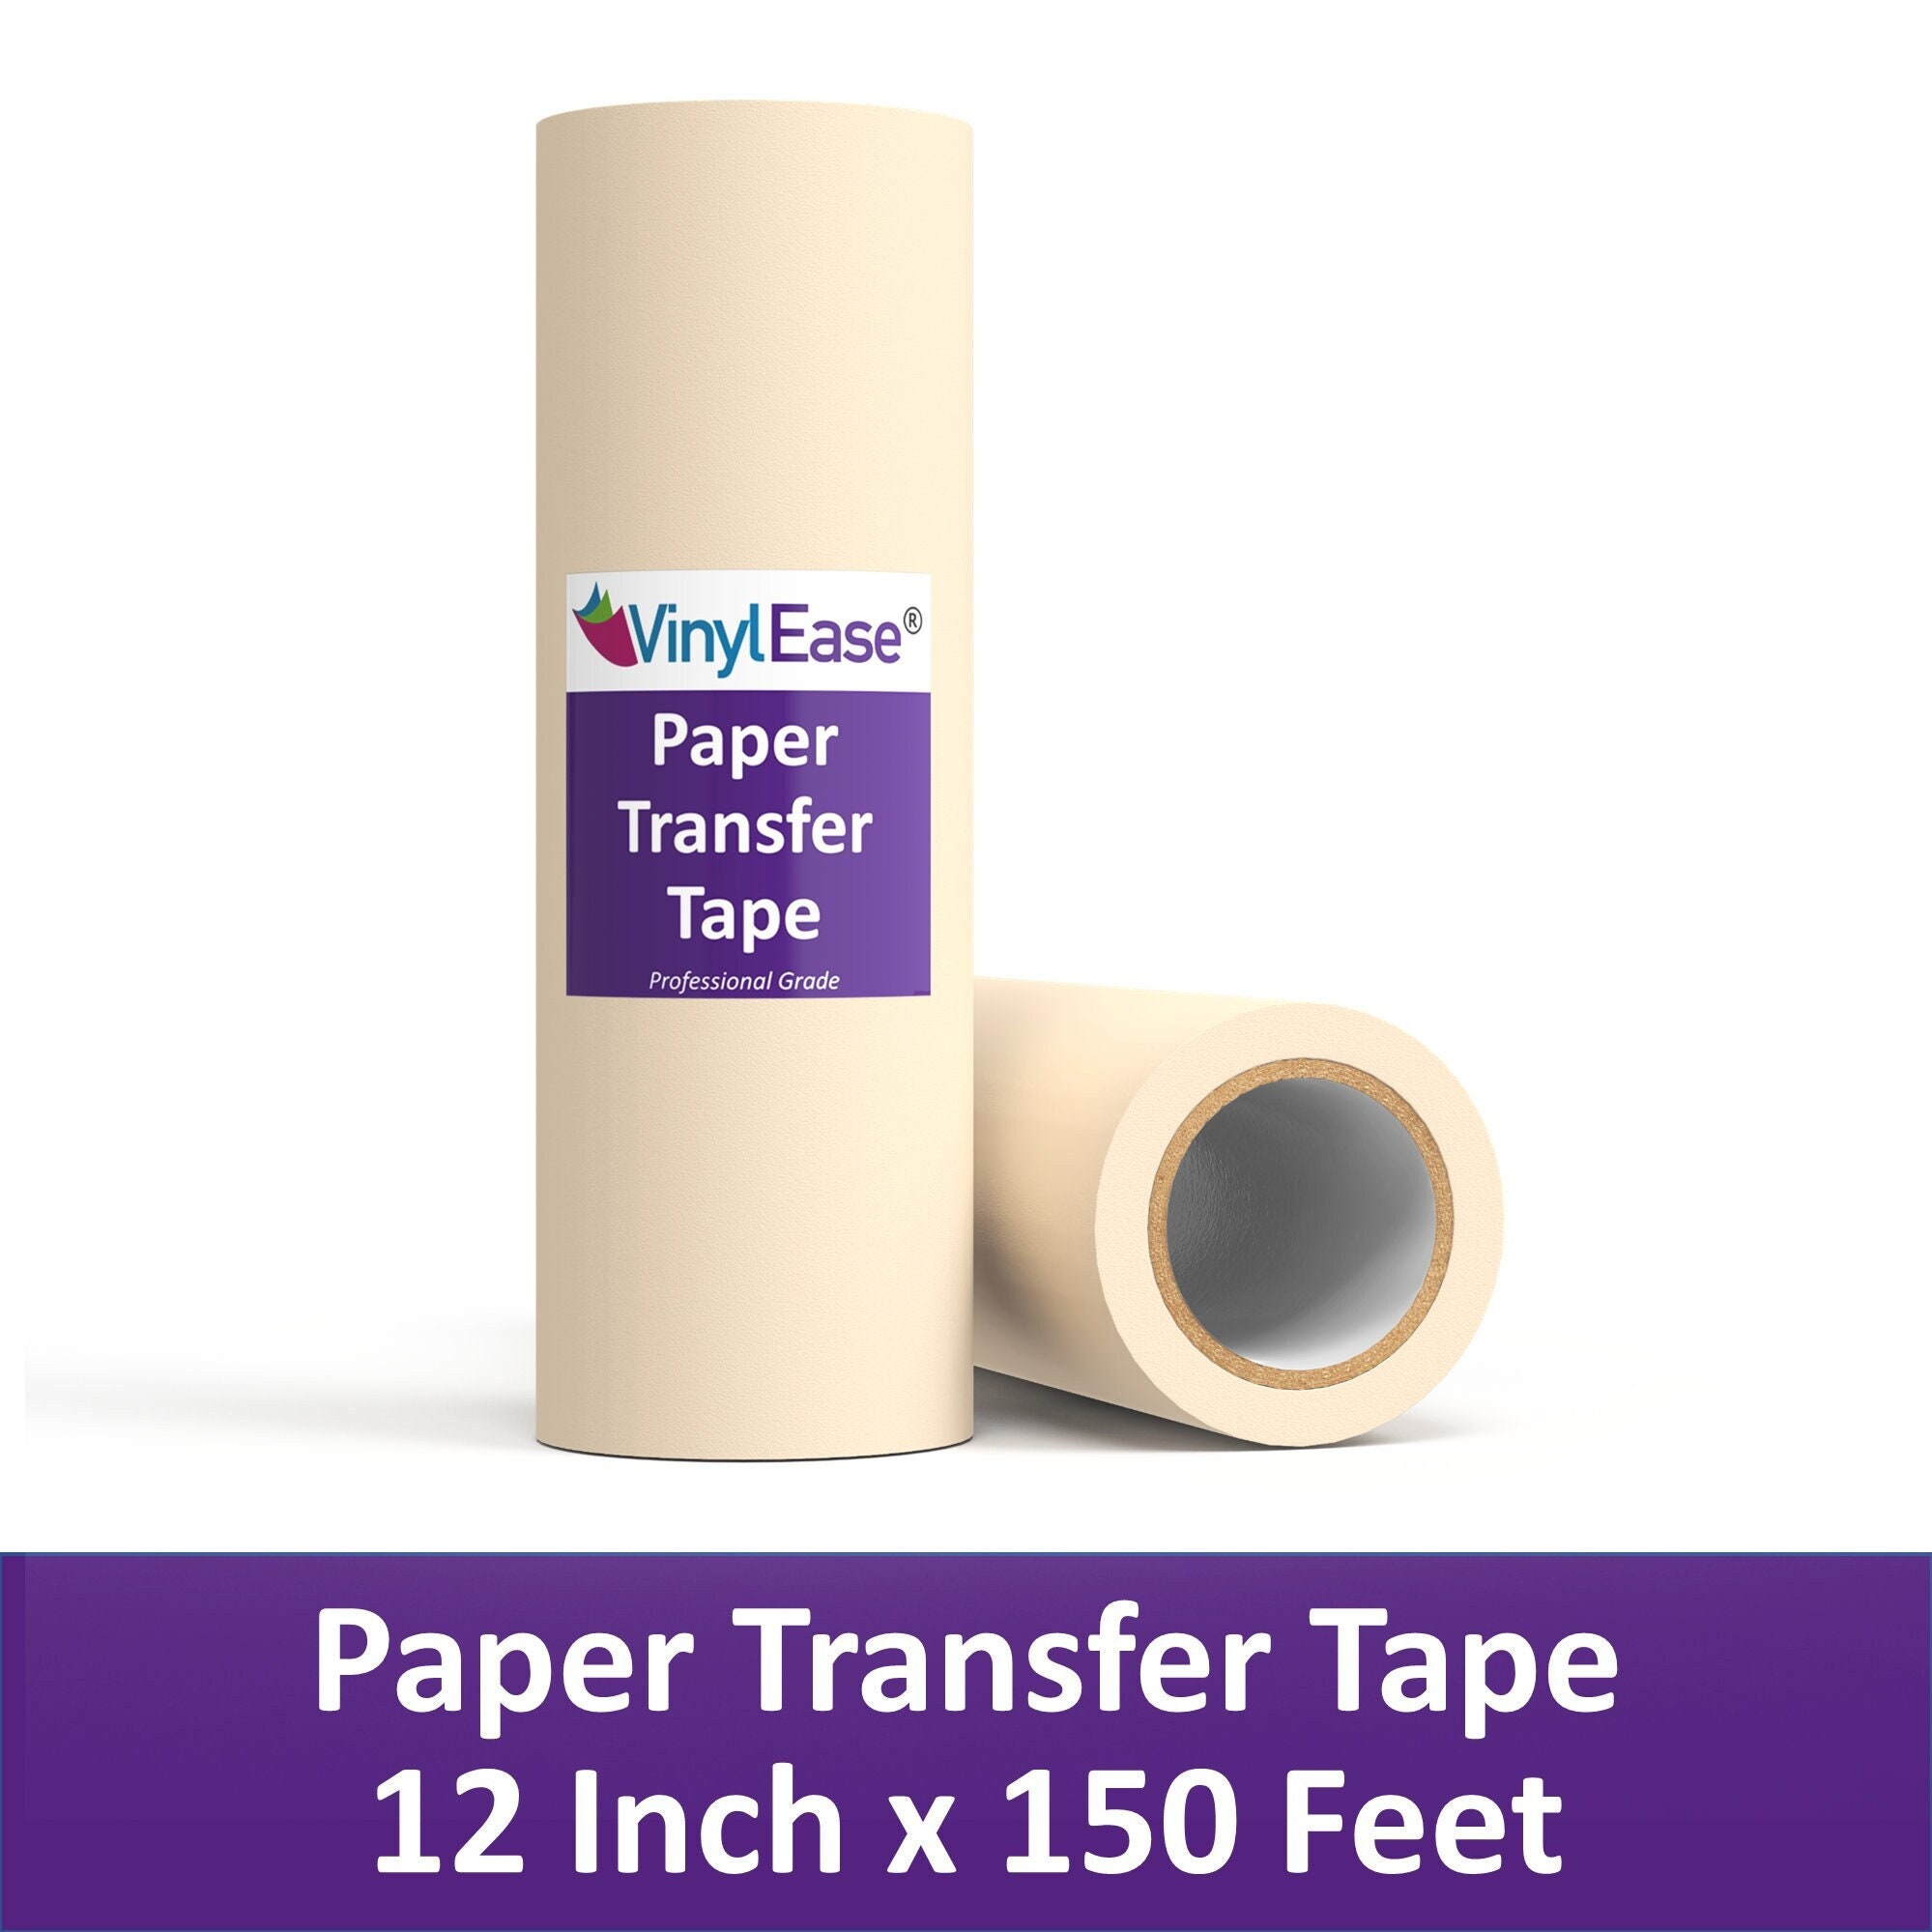 1 Layer Washi Tape Dispenser Storage Case Masking Tape Organizer